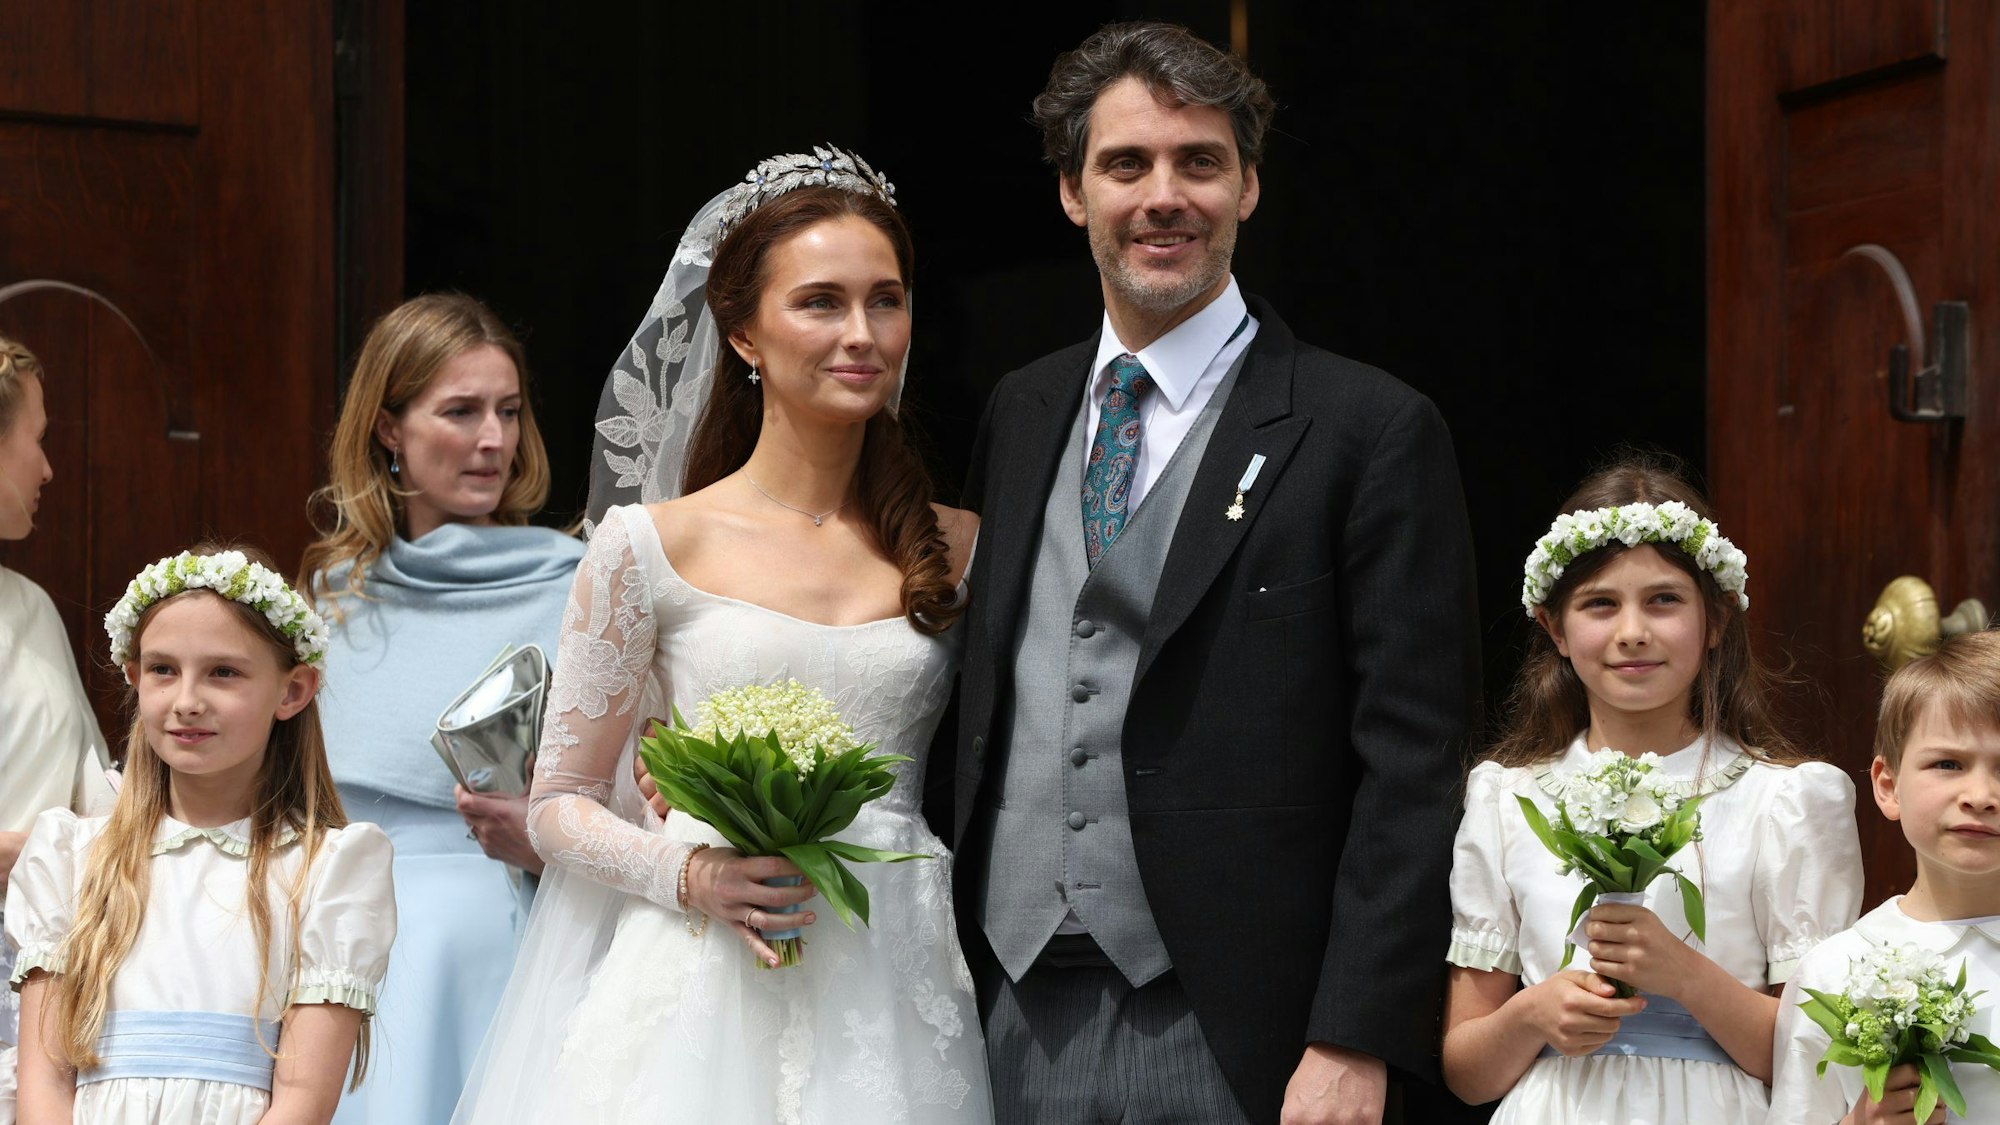 Ludwig Prinz von Bayern und seine Frau Sophie-Alexandra Prinzessin von Bayern stehen nach ihrer kirchlichen Hochzeit mit Blumenkindern und Pagen vor der Theatinerkirche